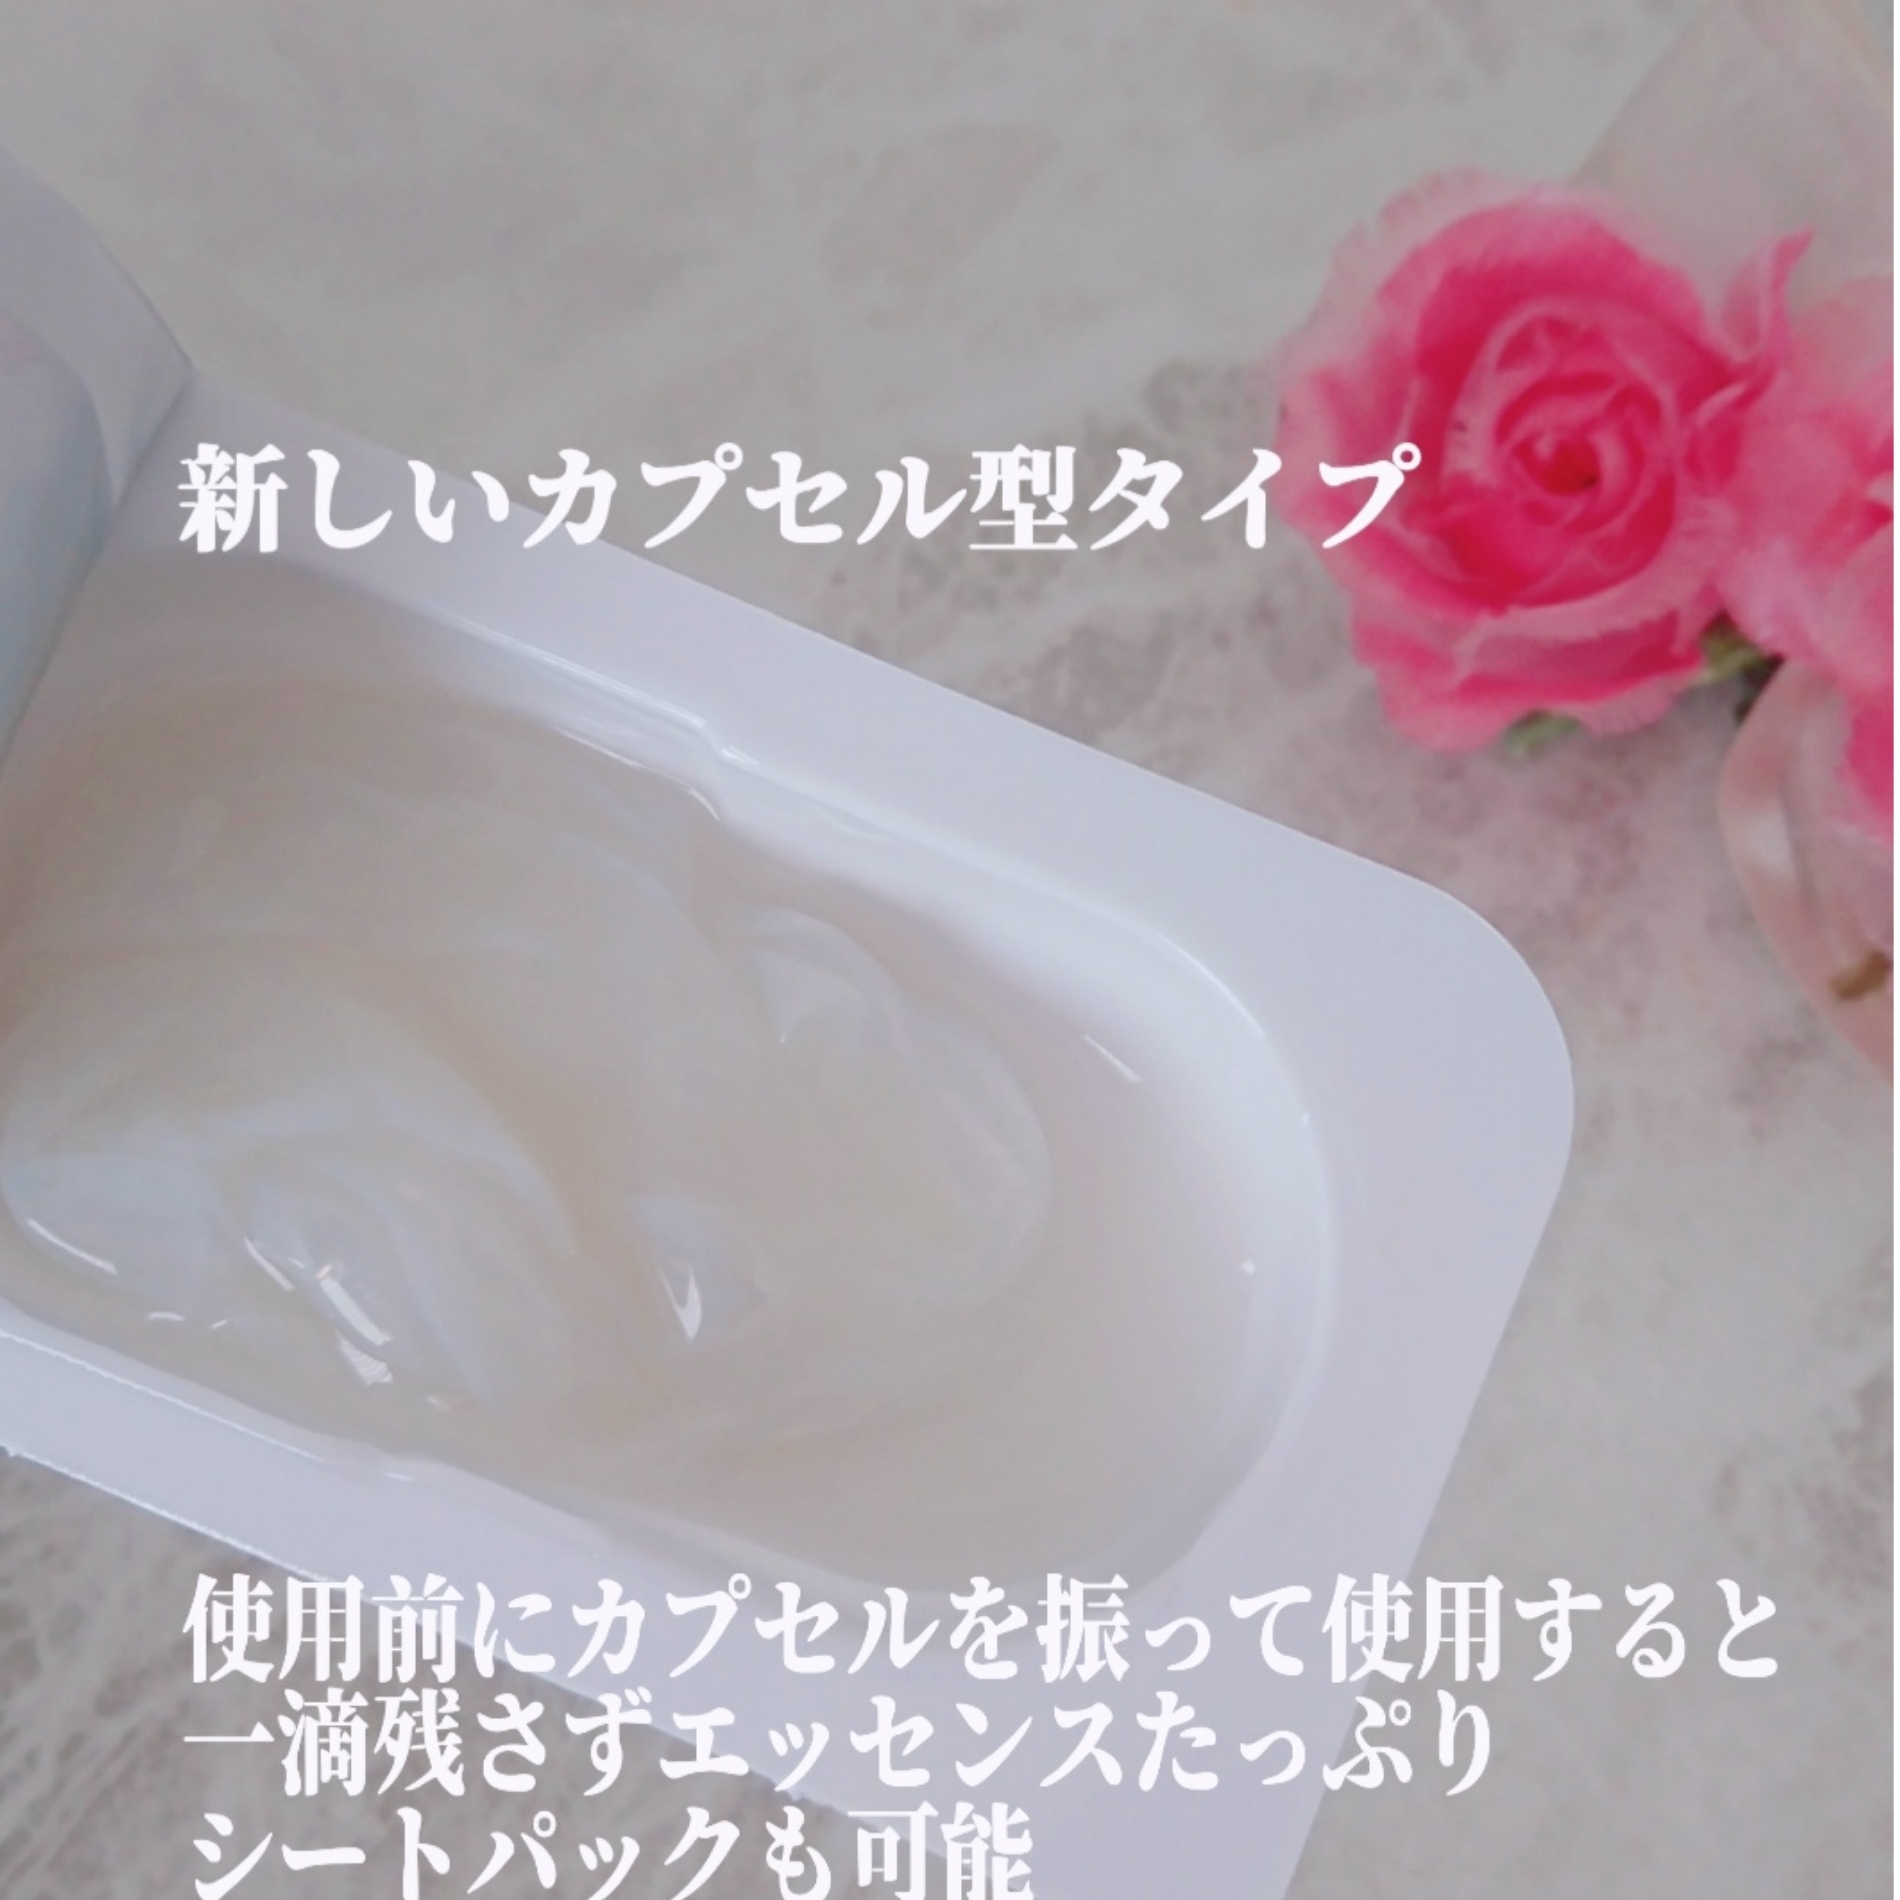 インデプスリジュブバイオセルロースマスクの良い点・メリットに関するYuKaRi♡さんの口コミ画像3